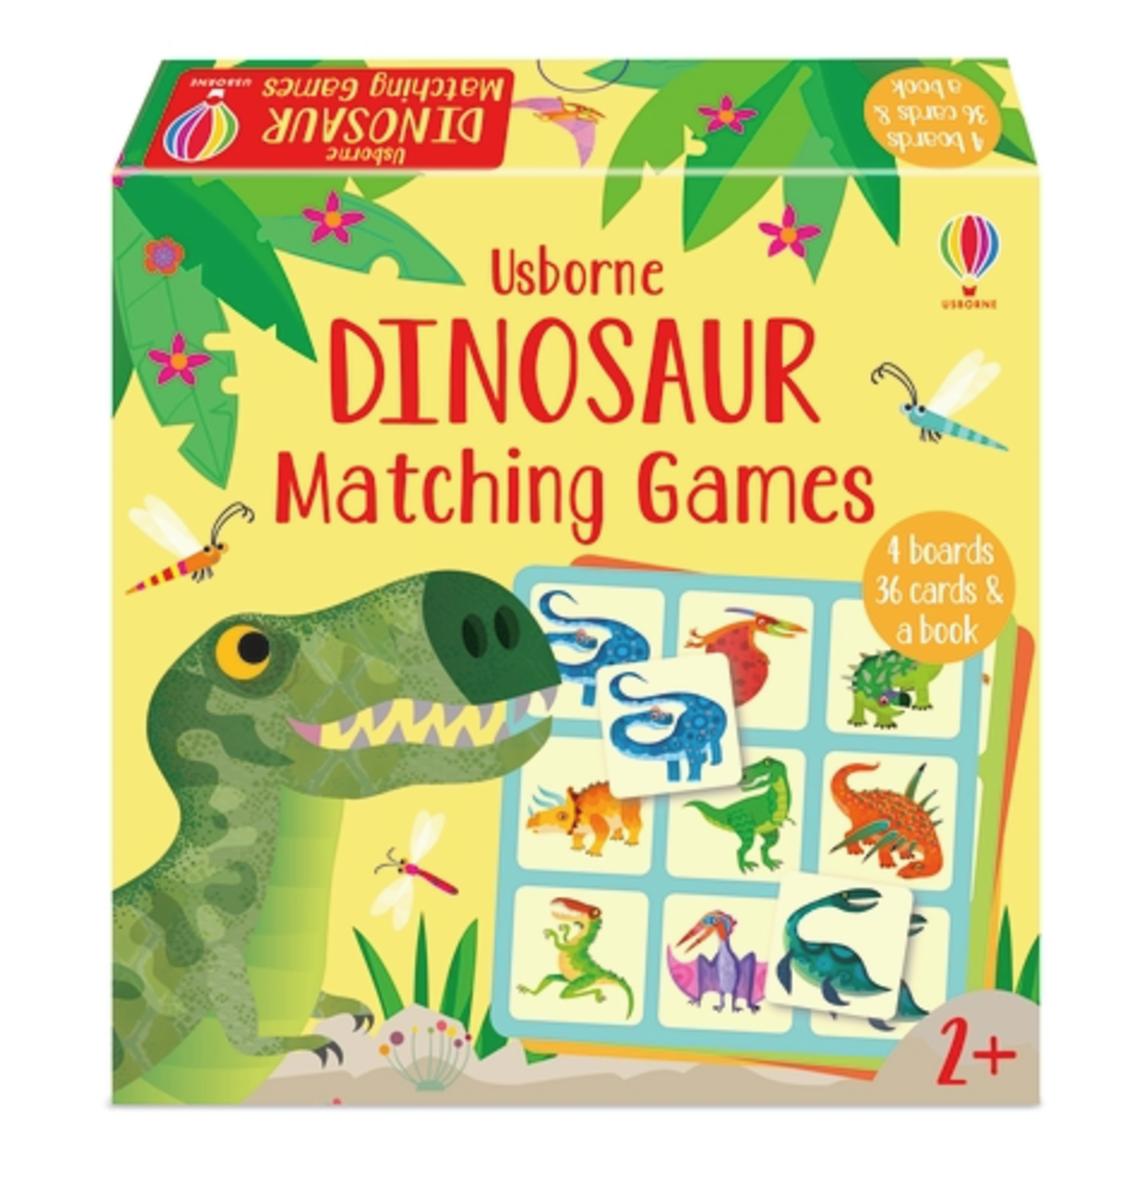 Dinosaur Matching Games - 